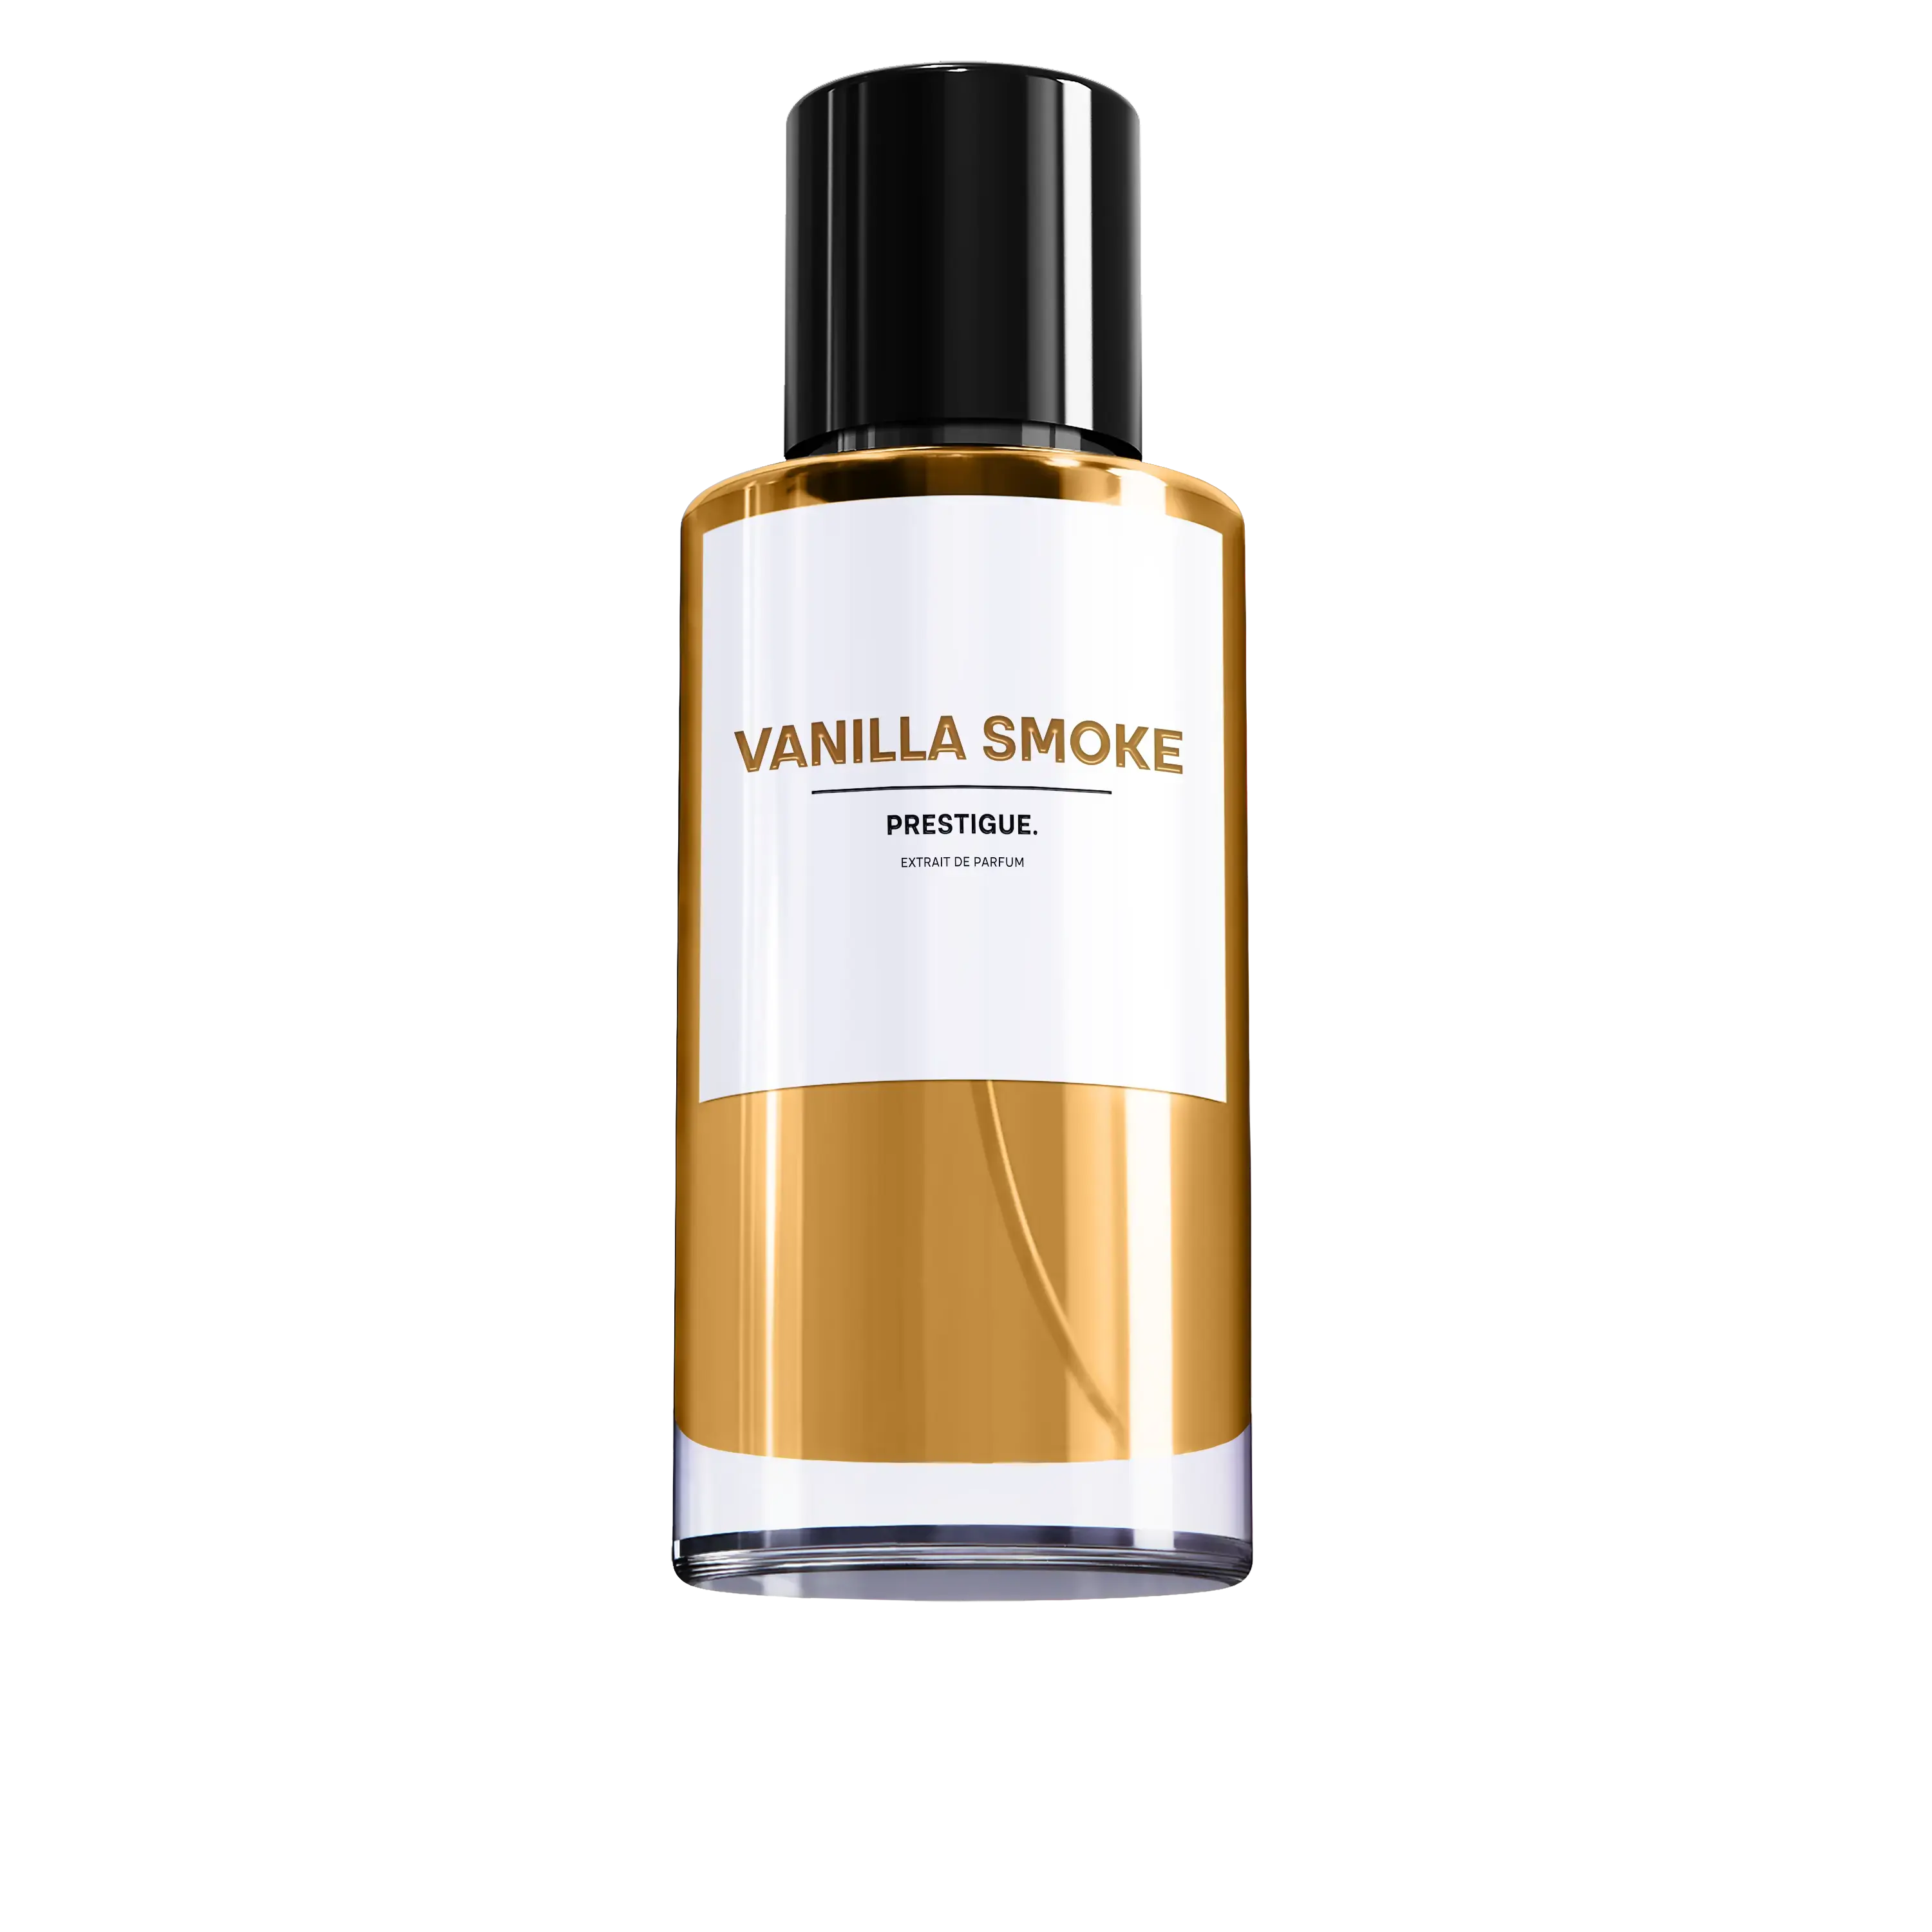 VANILLA SMOKE - PRESTIGUE Tobacco Vanilla